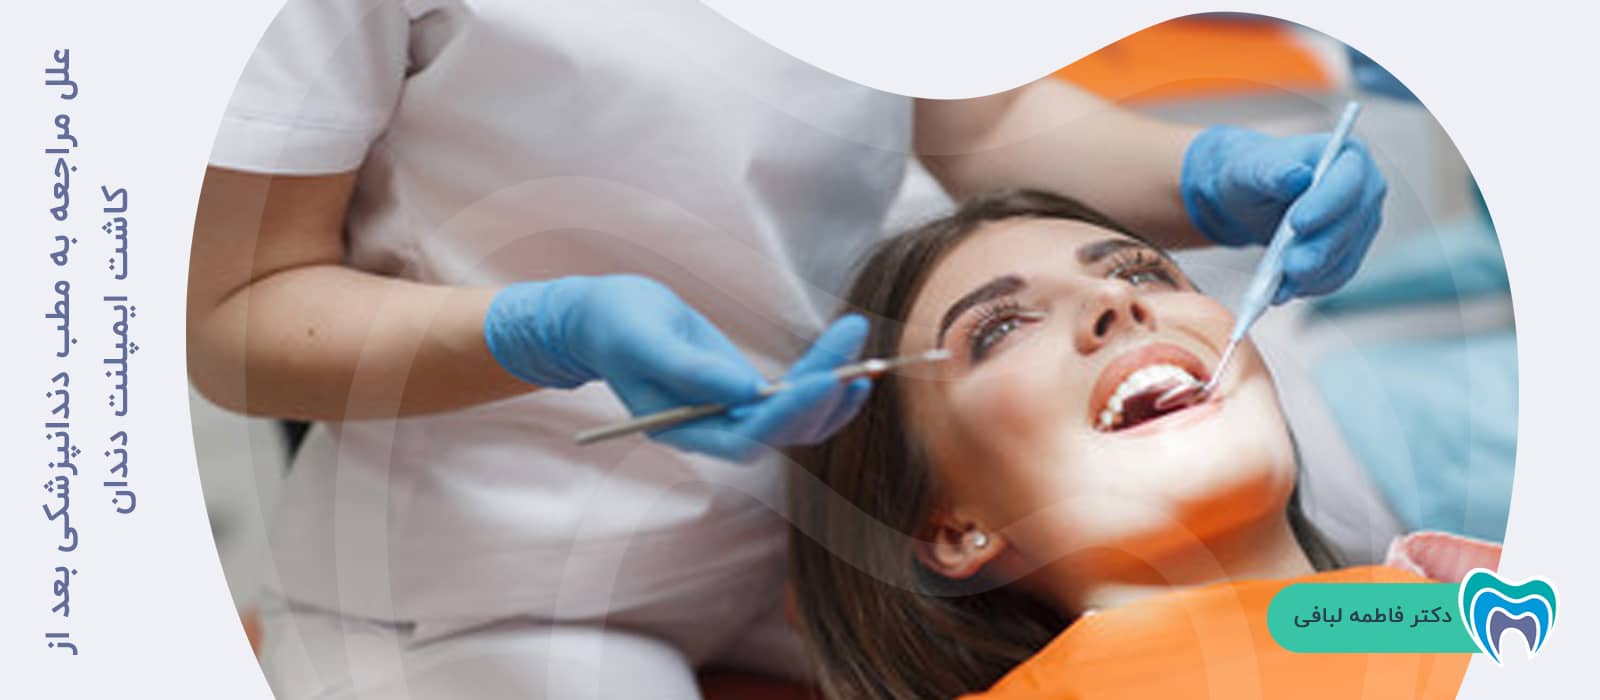 علل مراجعه به مطب دندانپزشکی بعد از کاشت ایمپلنت دندان